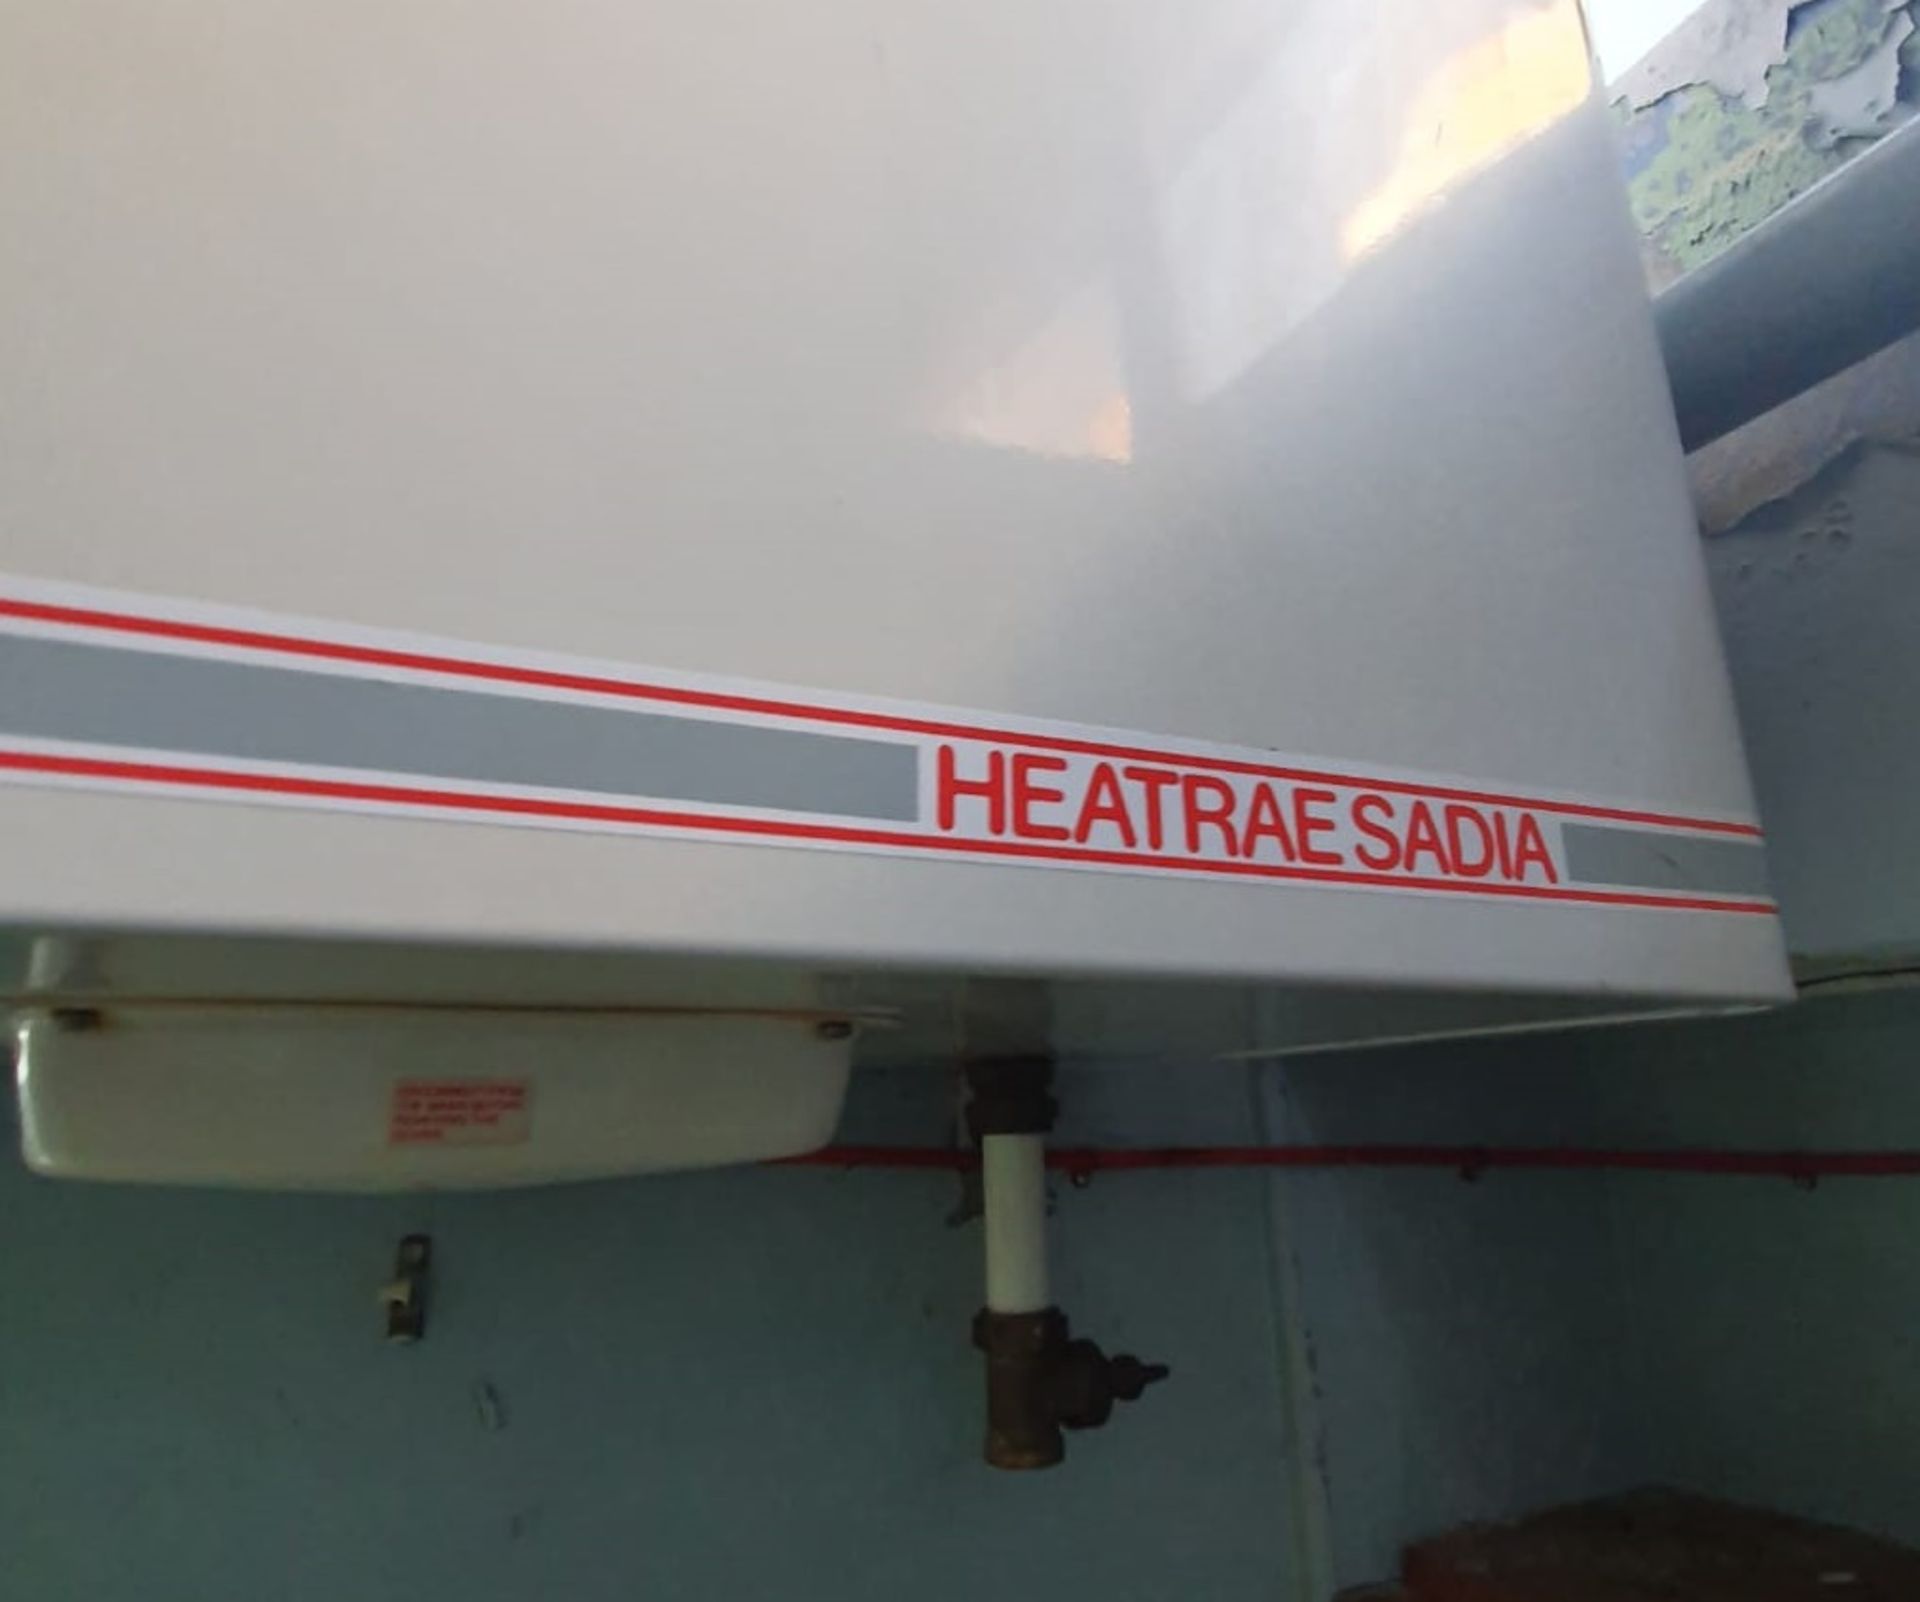 1 x Heatrae Sadia Hot Water Tank - 12.5 Litres - 240v - CL483 - Location: Folkestone - Image 2 of 4